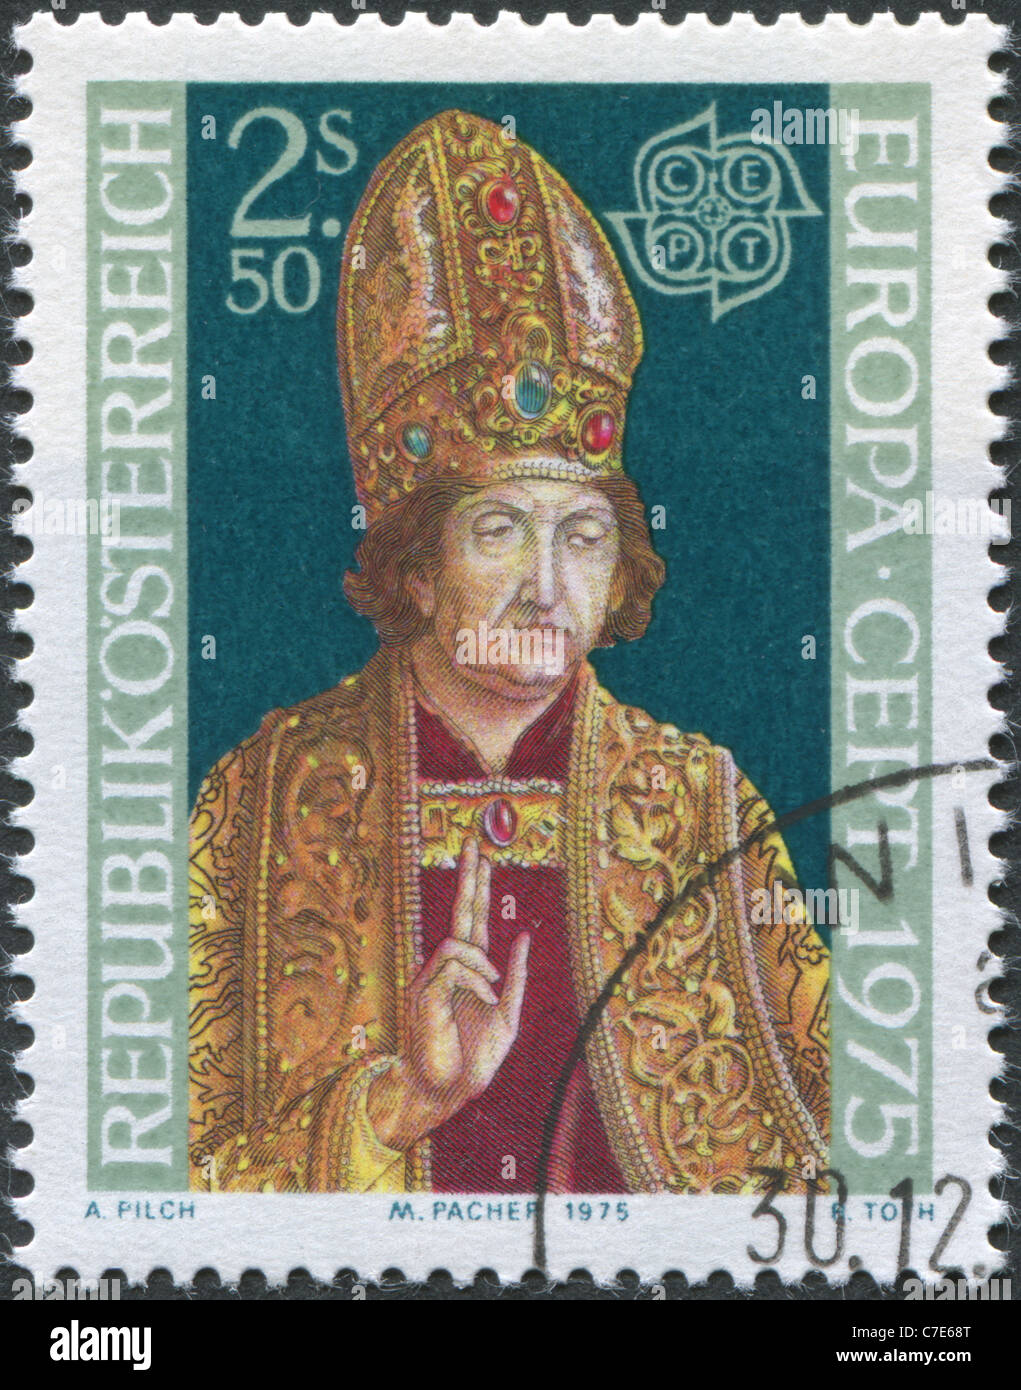 Autriche - 1975 : timbre imprimé en Autriche, présente le grand prêtre, de Michael Pacher Banque D'Images